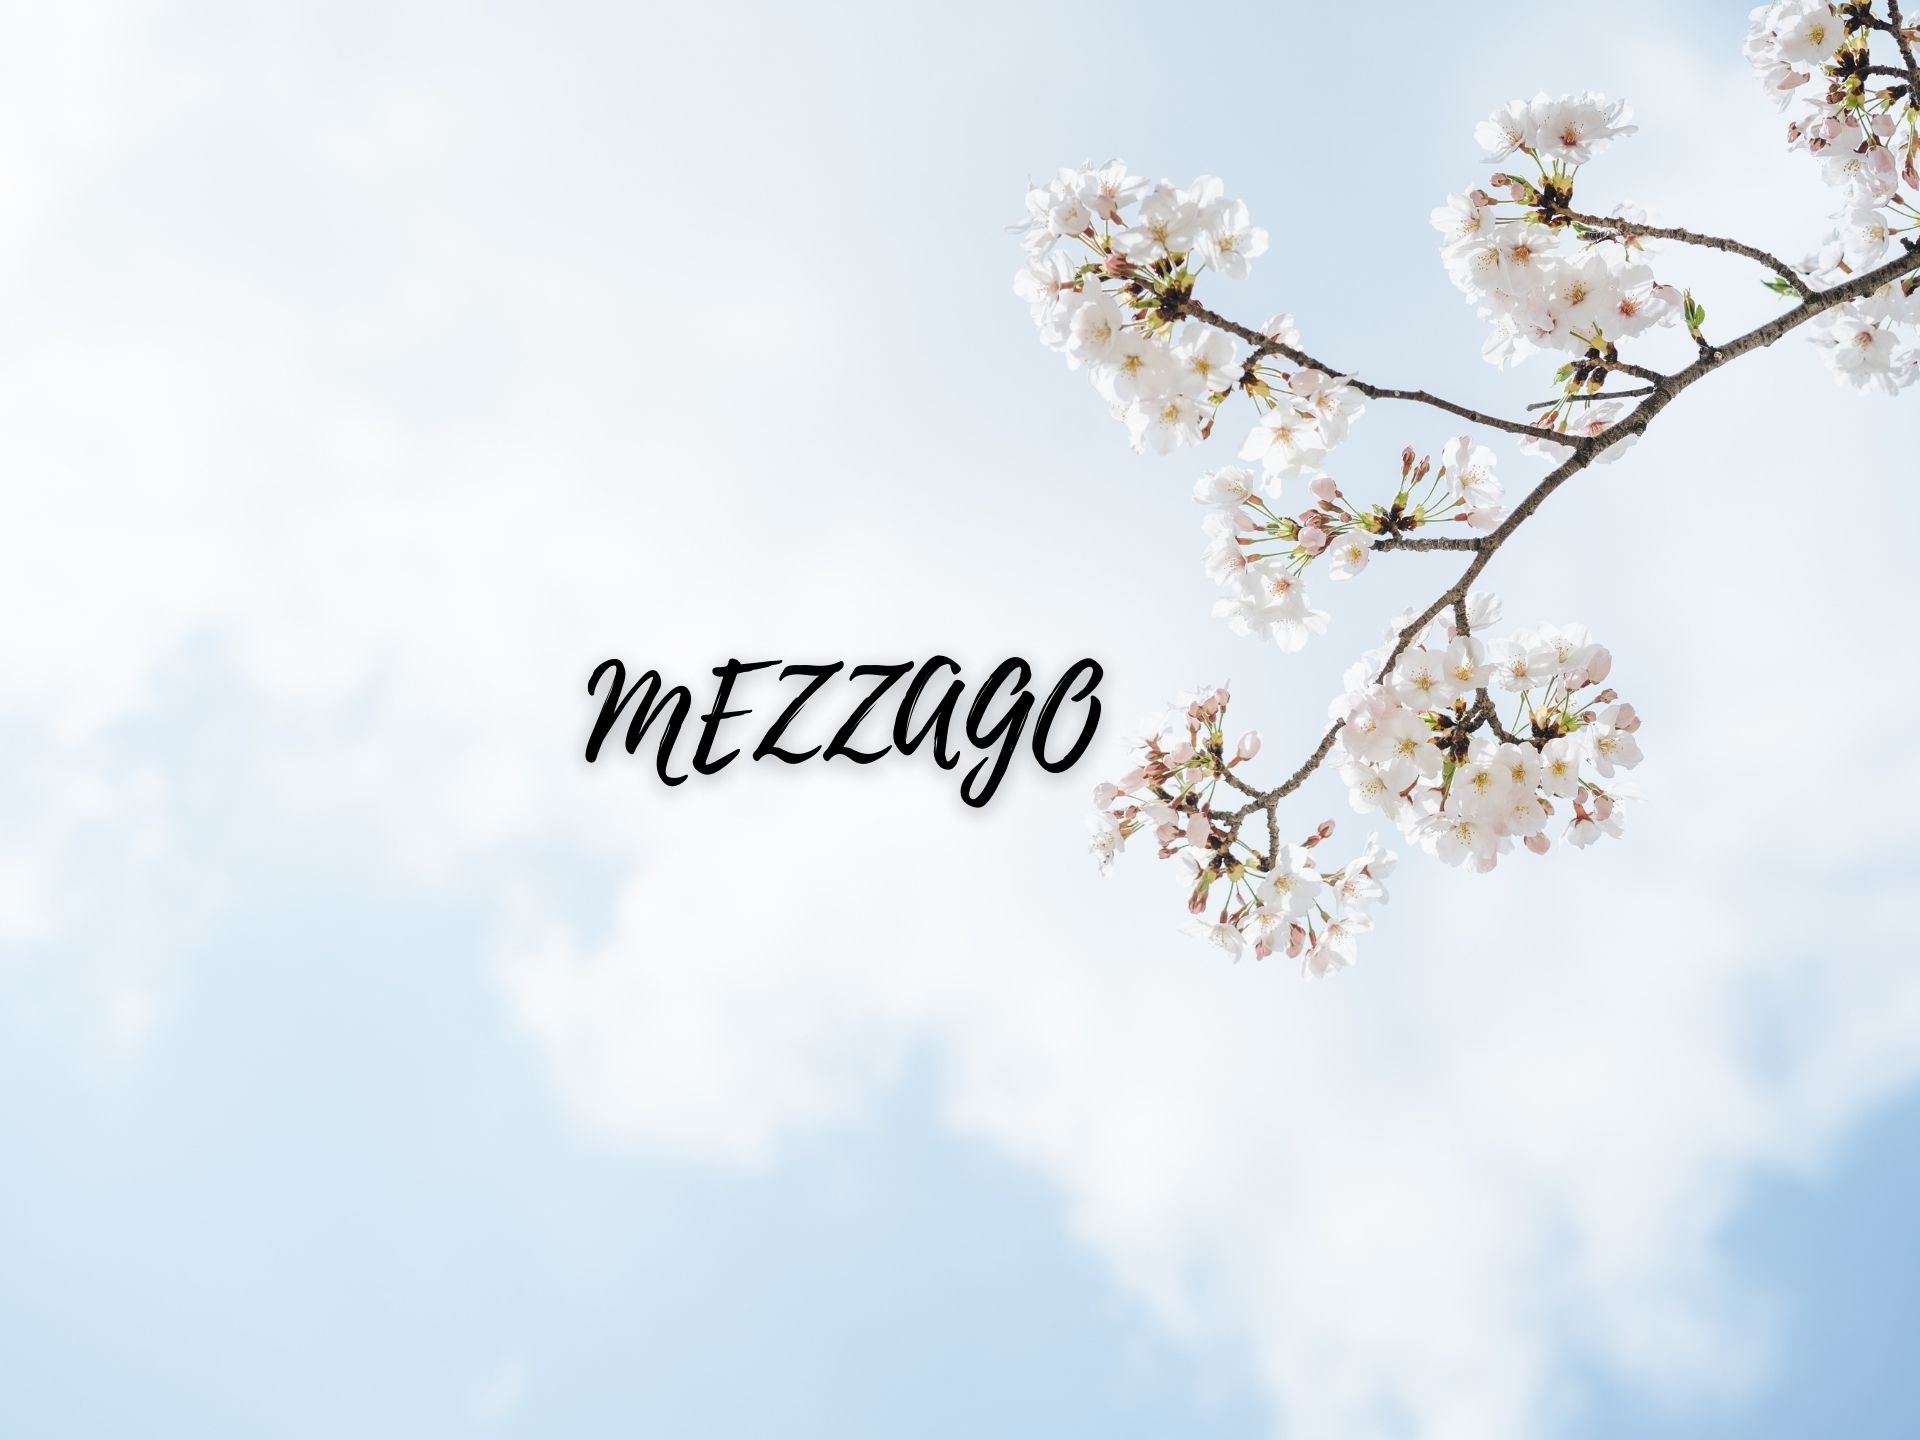 Mezzago ville in vendita in Brianza